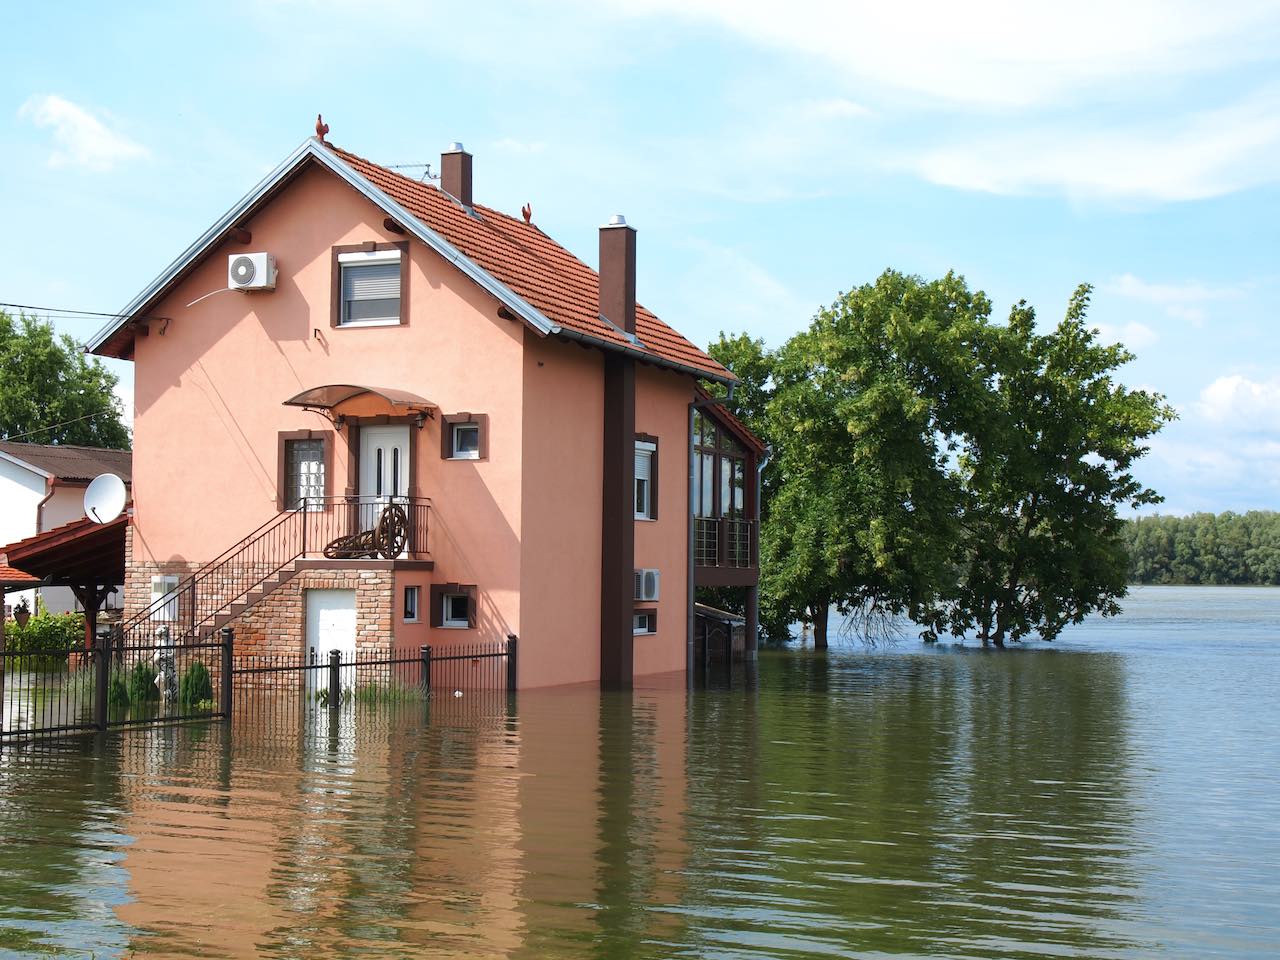 Über die Ufer getretener Fluss flutet Haus.